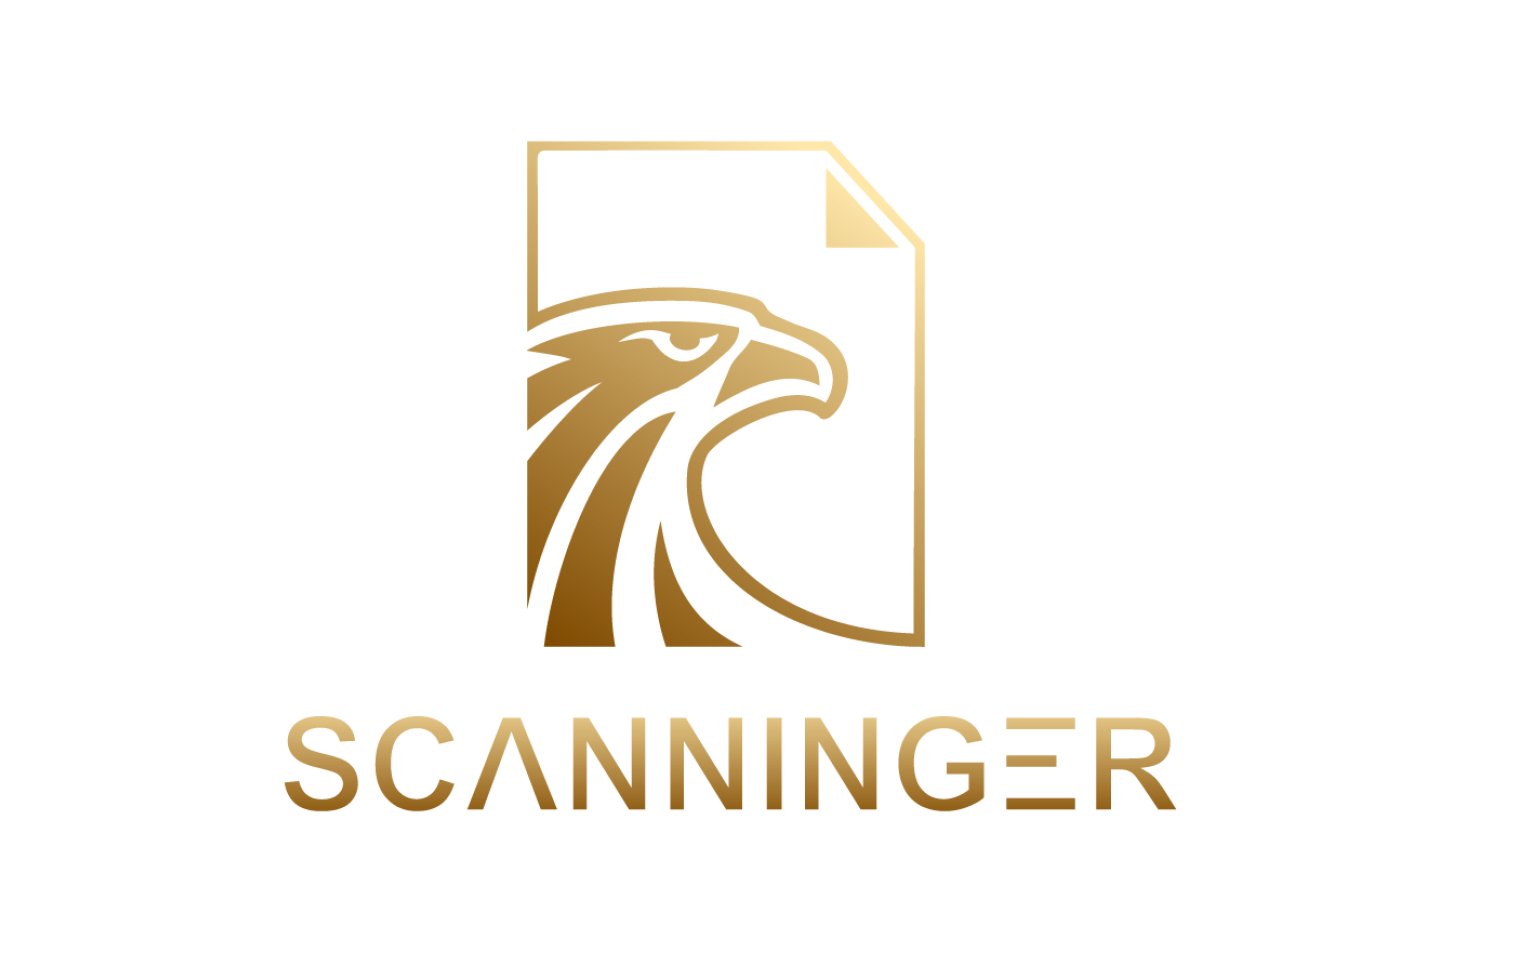 Scanninger